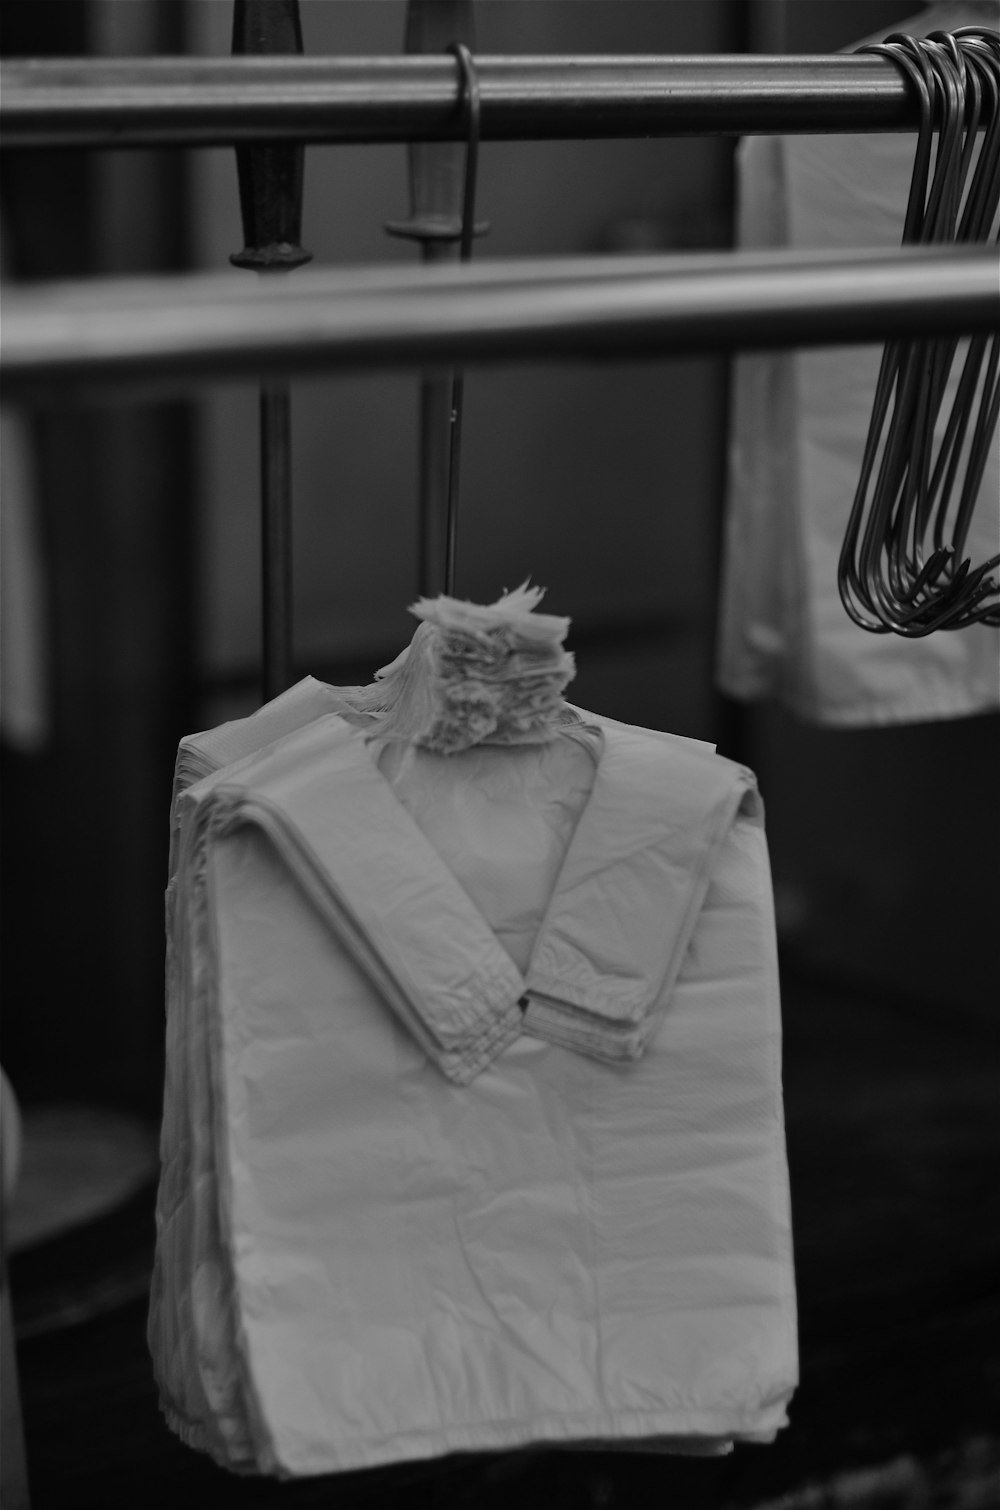 grayscale photo of dress shirt